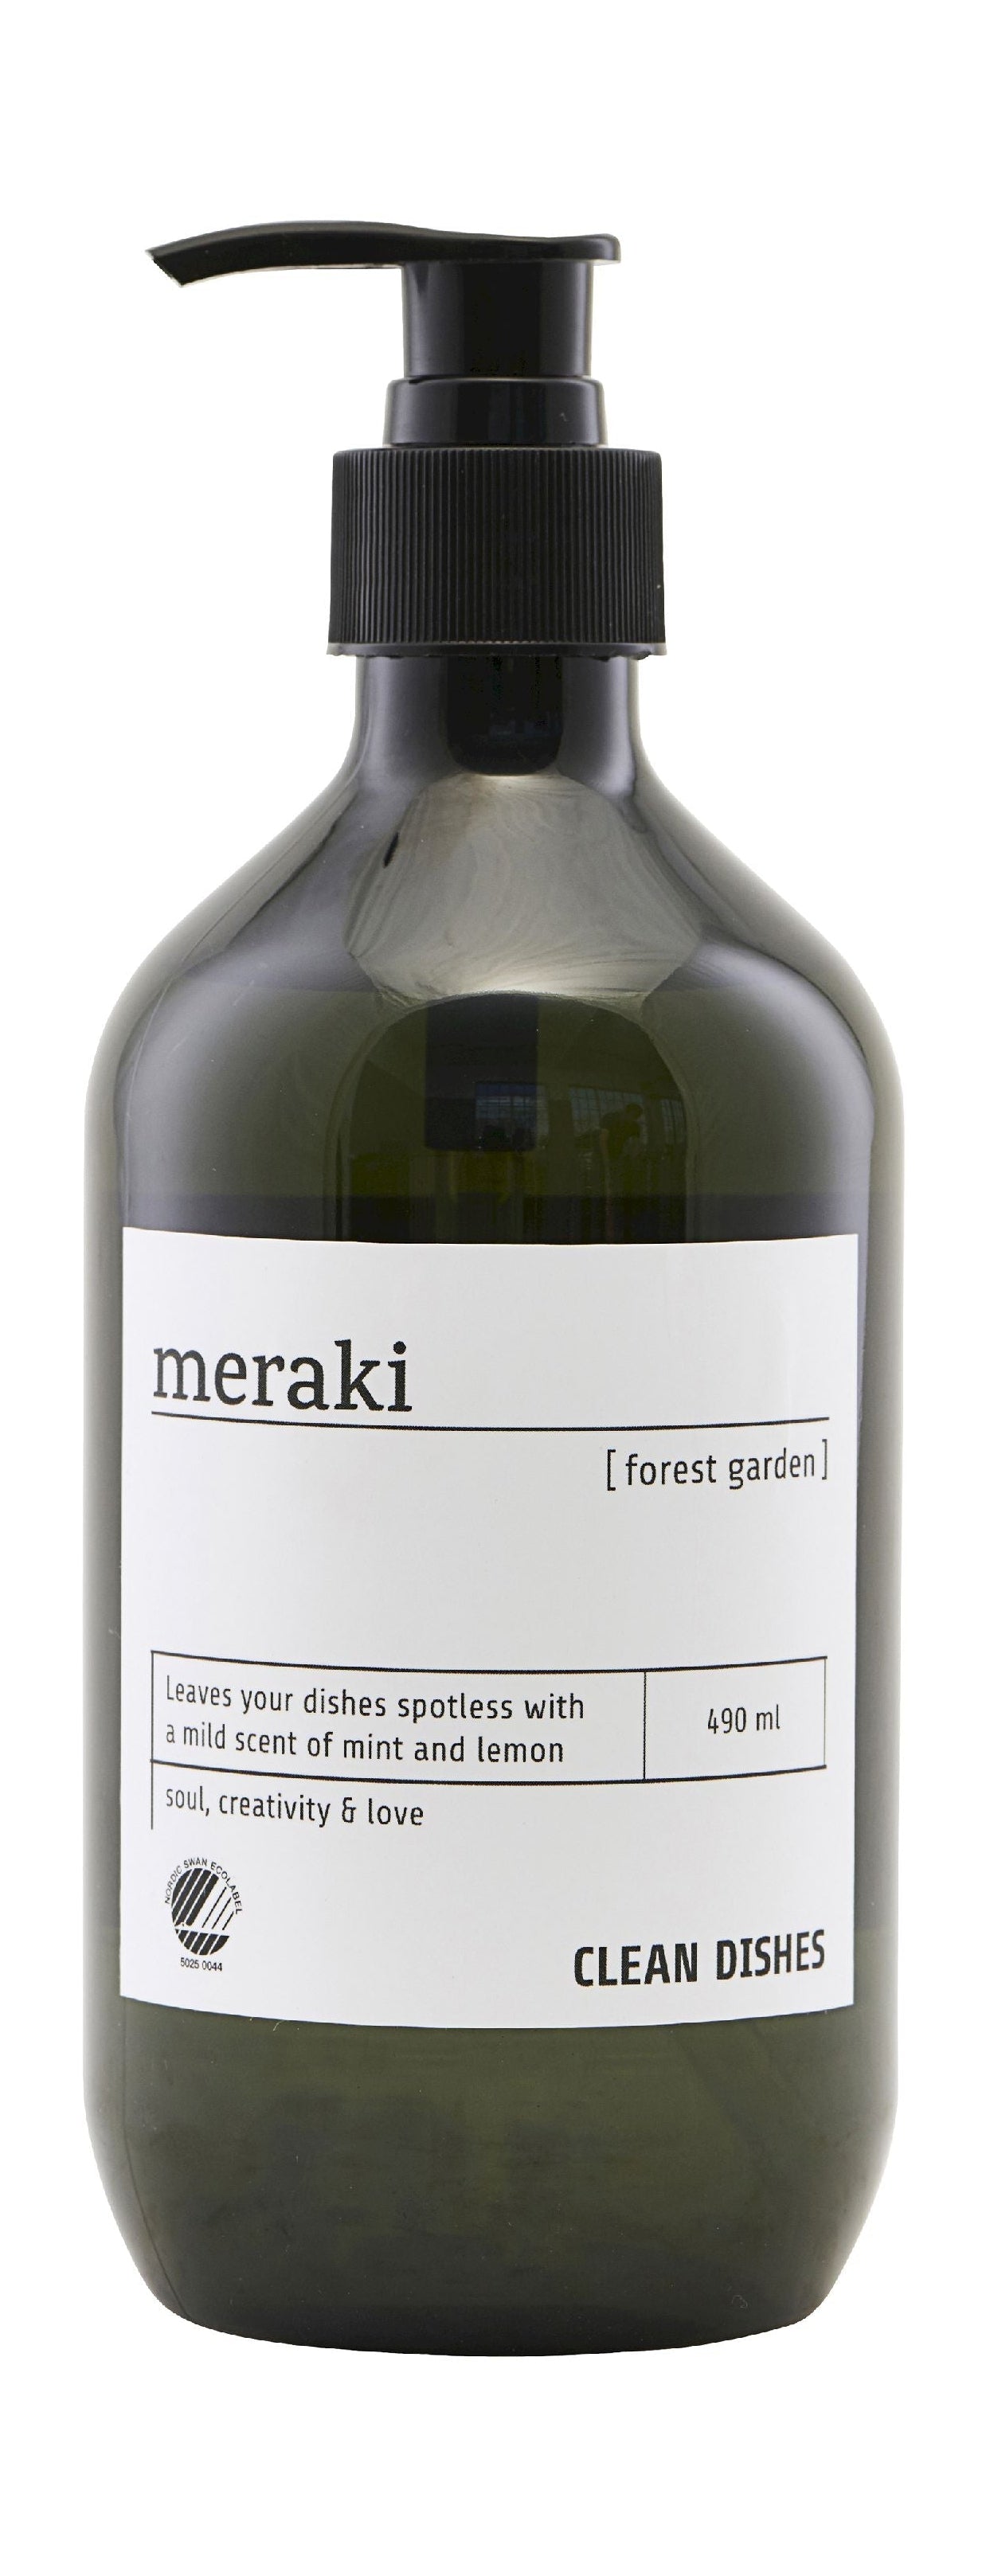 Detergente Meraki 490 ml, Jardín forestal